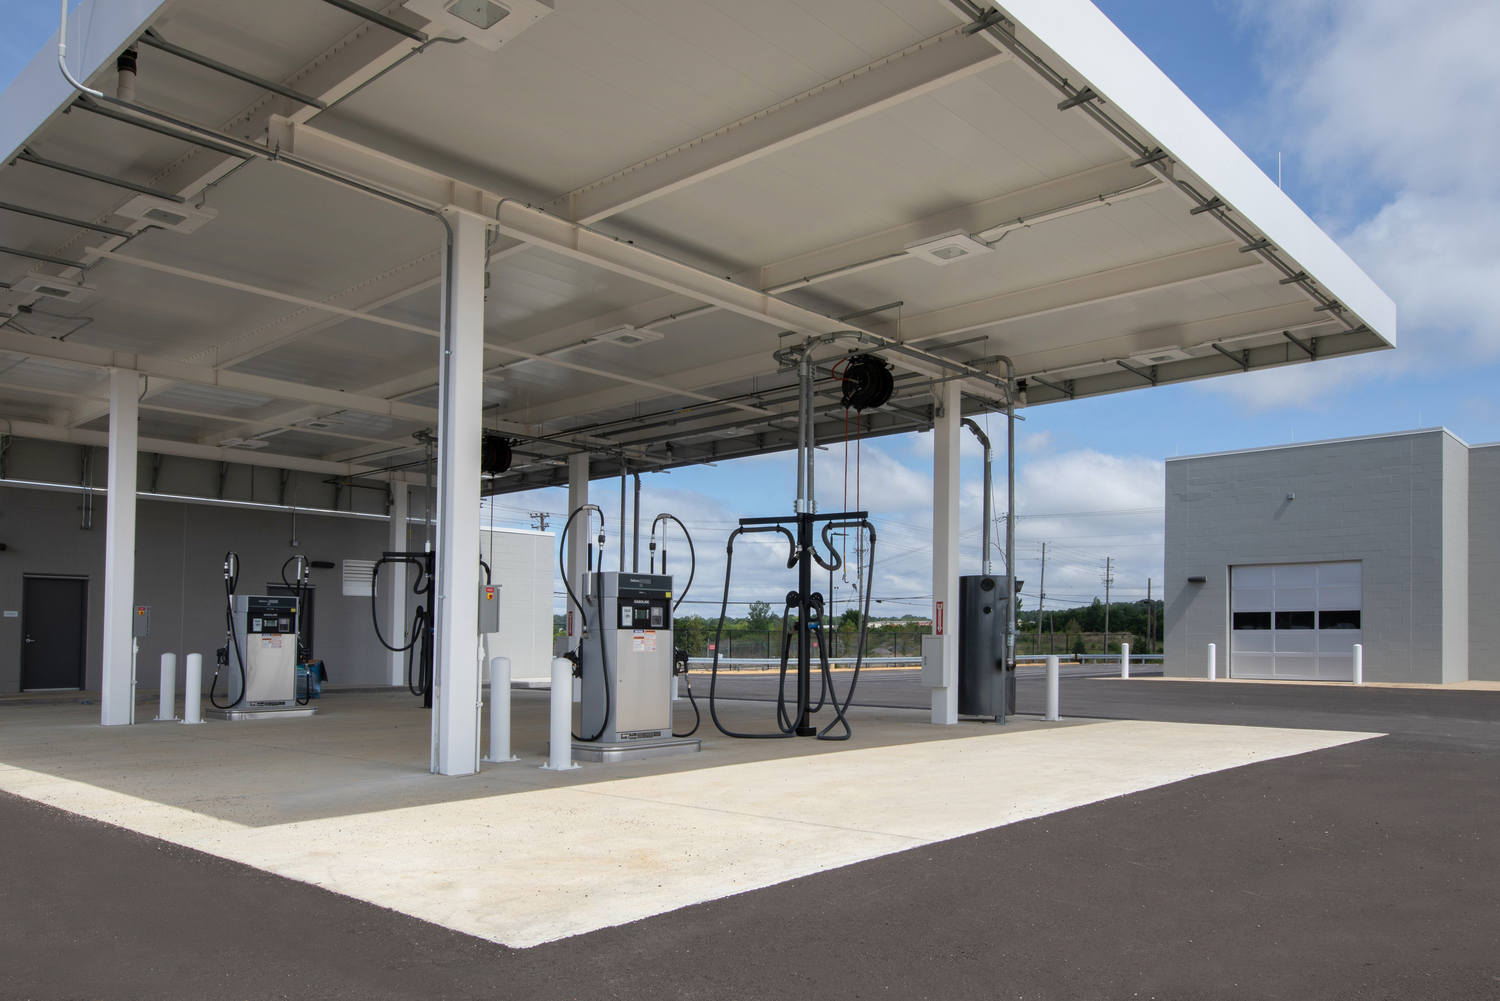 Birmingham Airport QTA Rental Car Facility

fuel station 